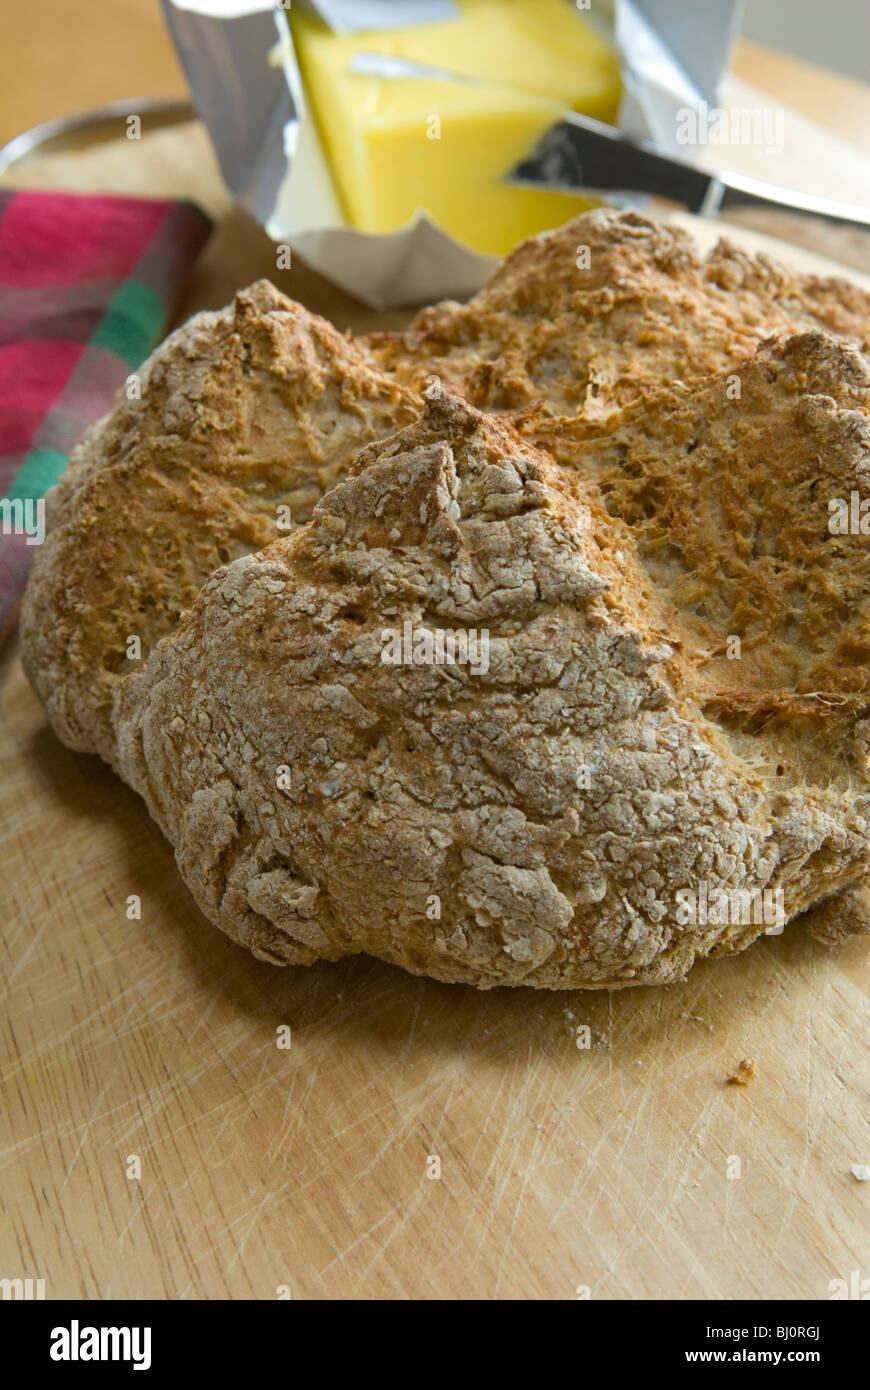 Irish Soda Bread, freshly baked. Stock Photo